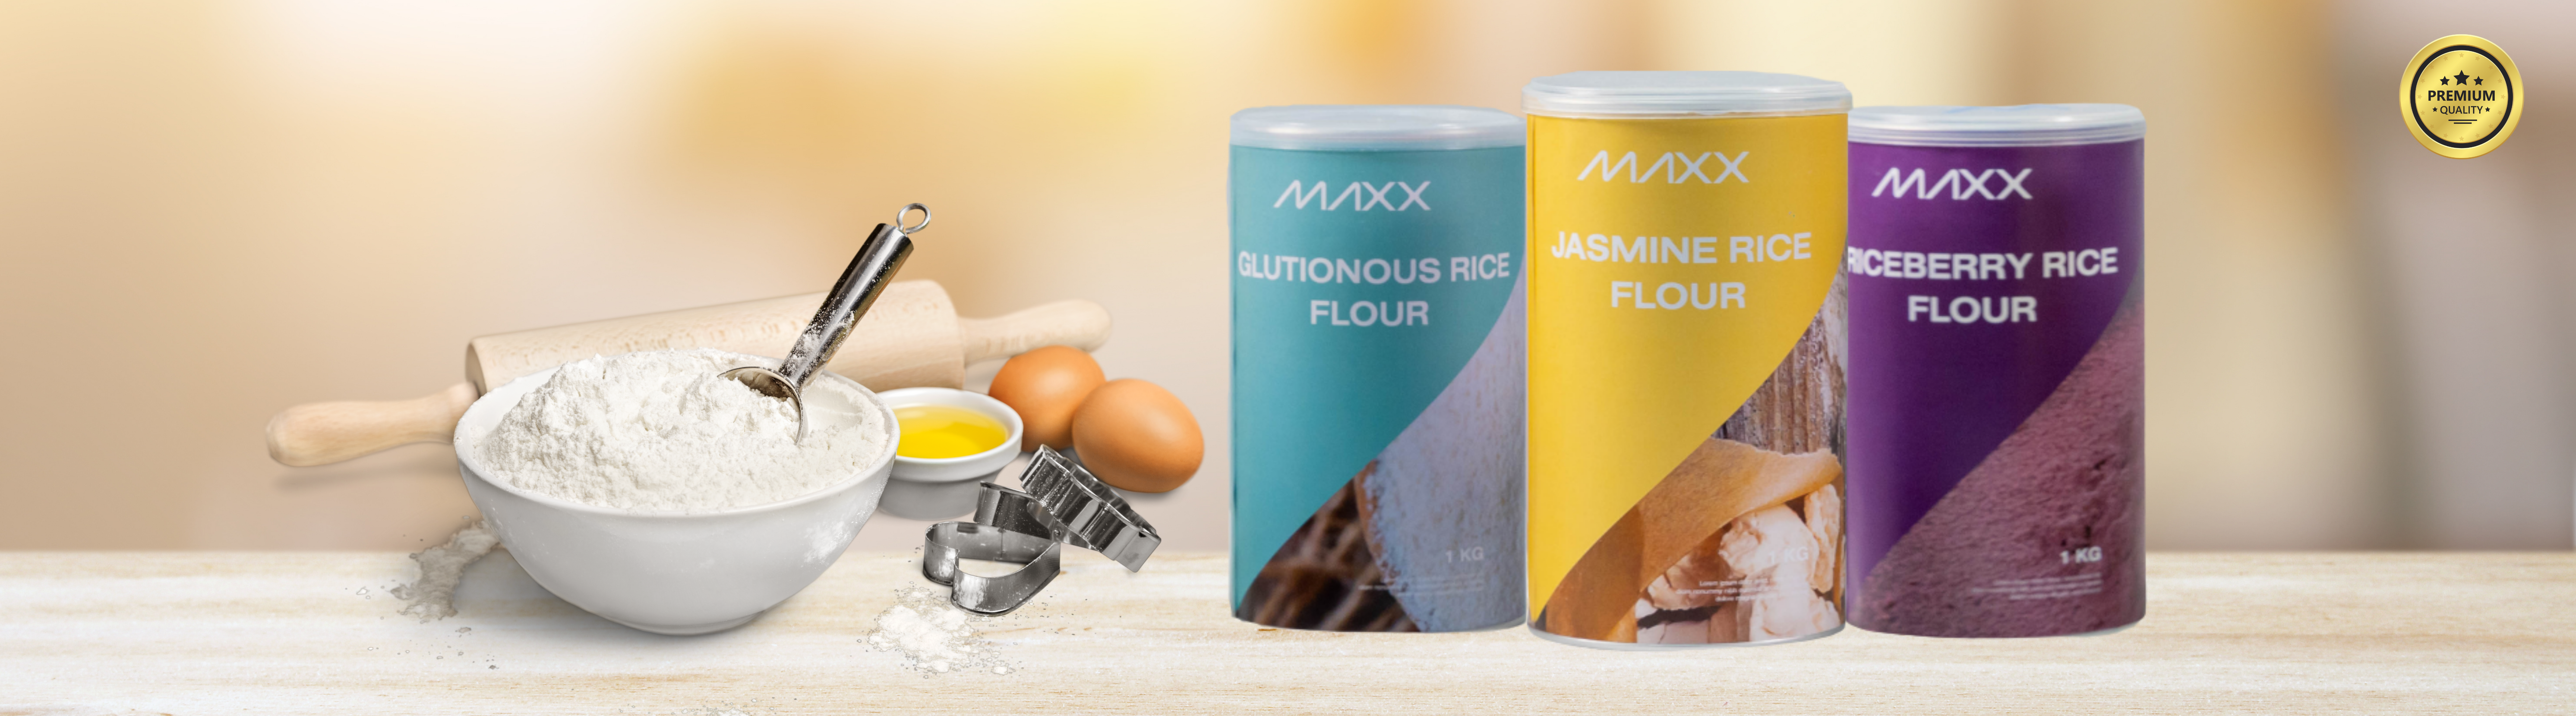 Maxx Rice Flour3